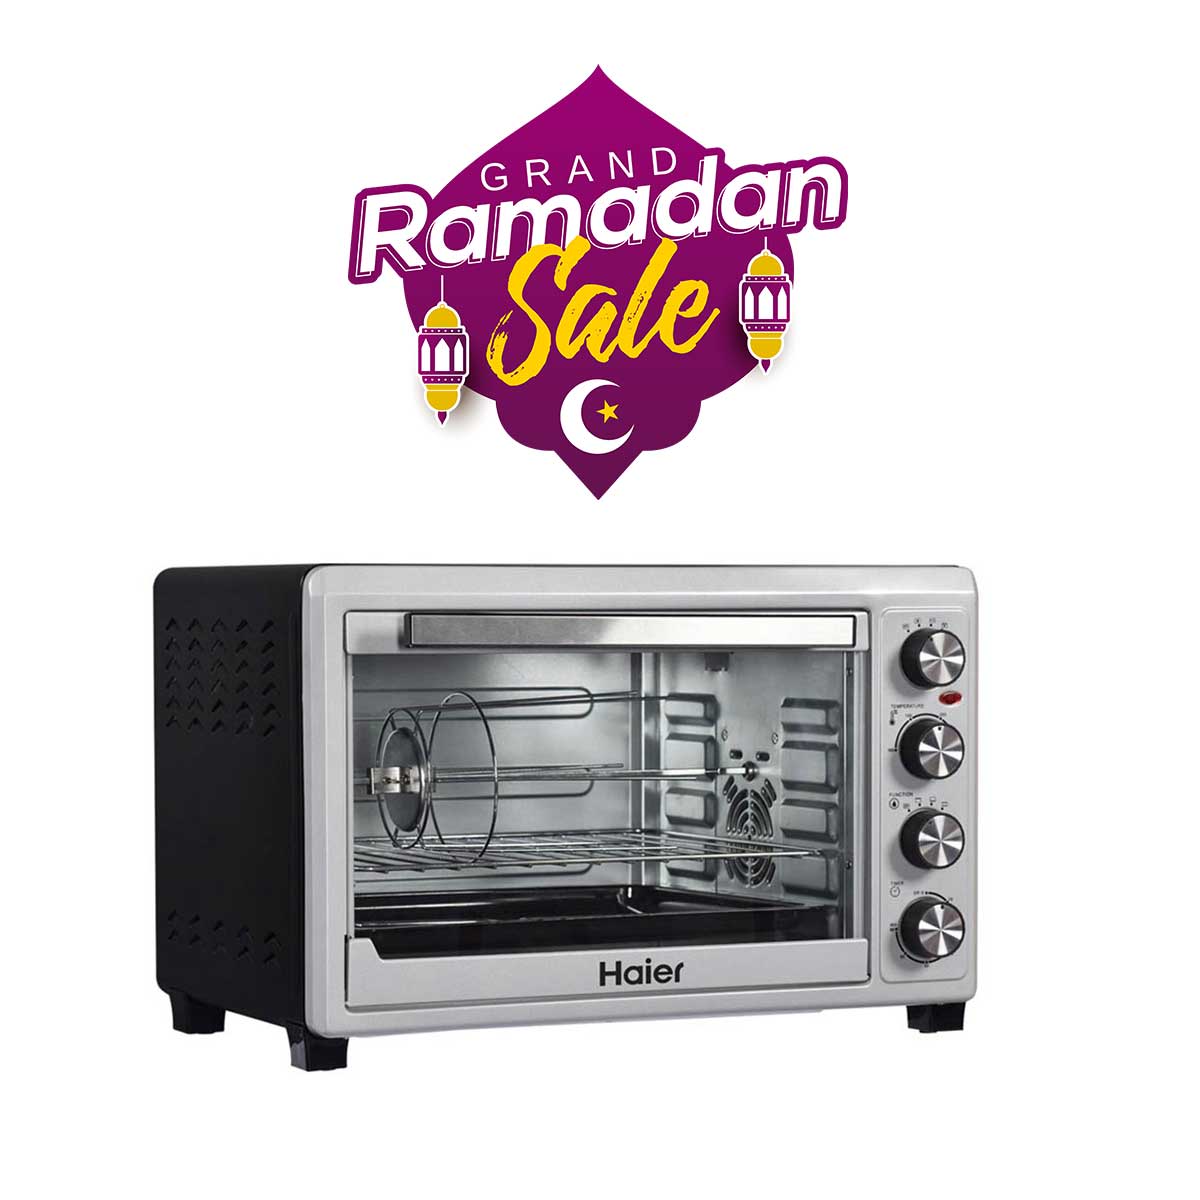 ramazan-sale-Haier-Oven-Toaster-4550S